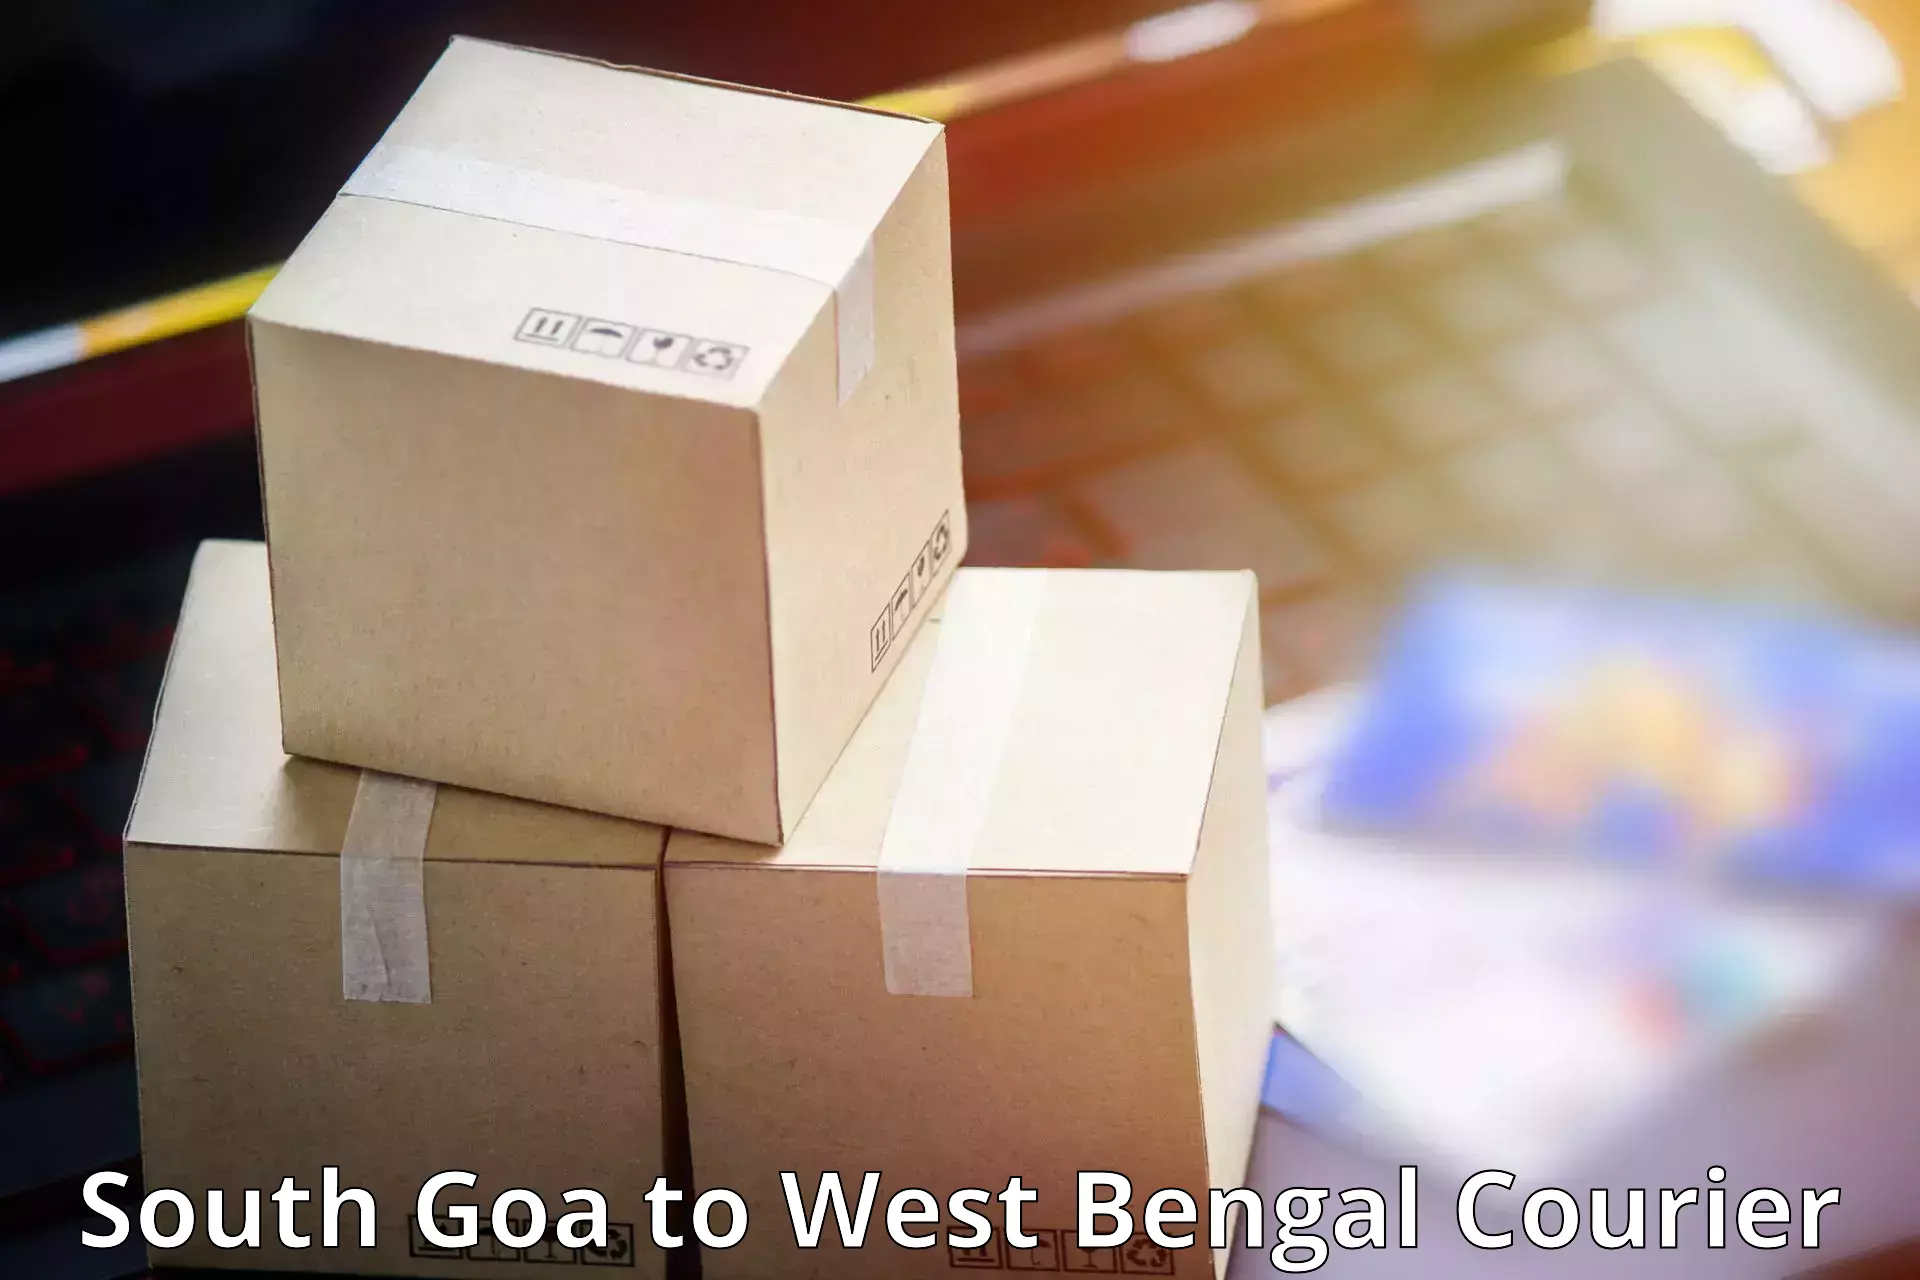 Easy access courier services South Goa to Manbazar